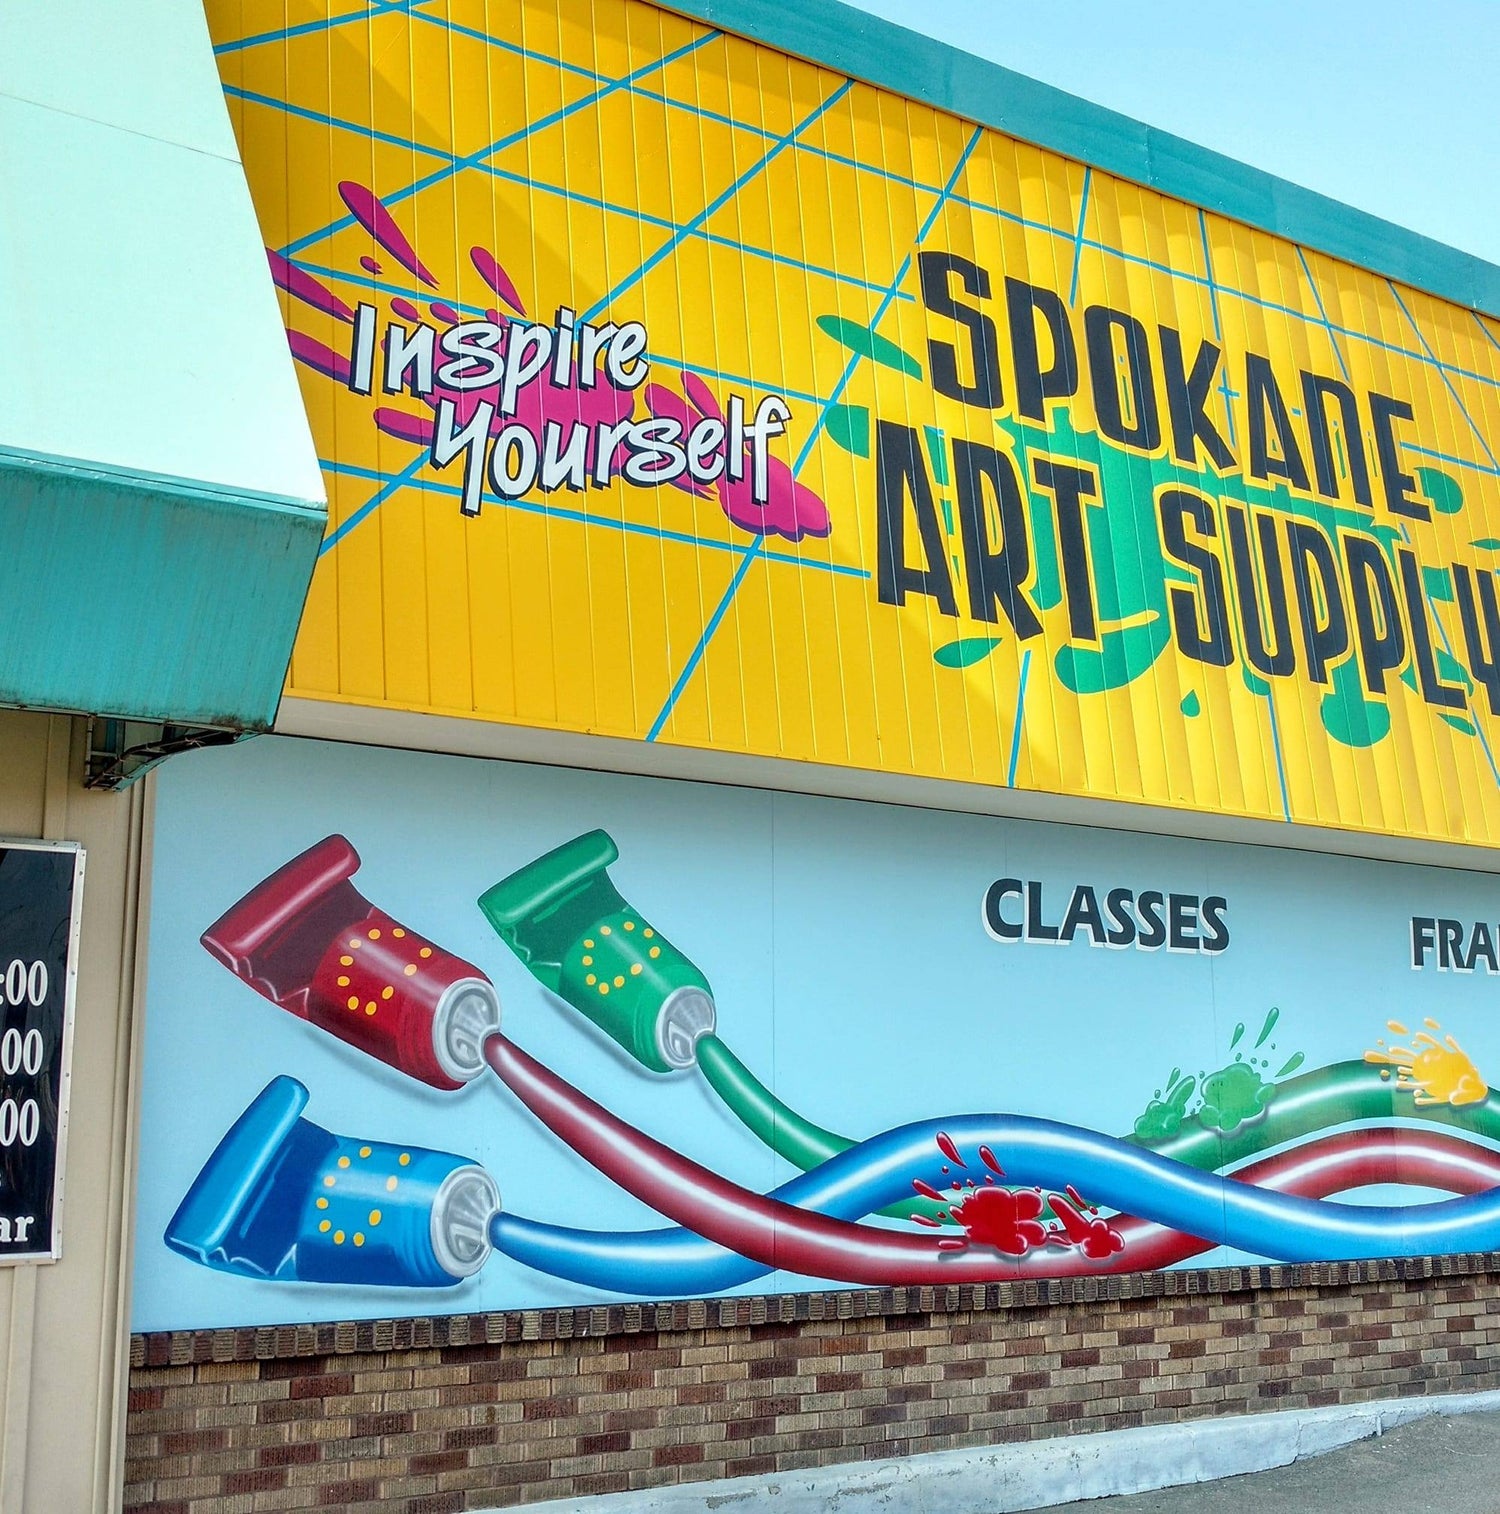 Spokane Art Supply in Spokane Wa